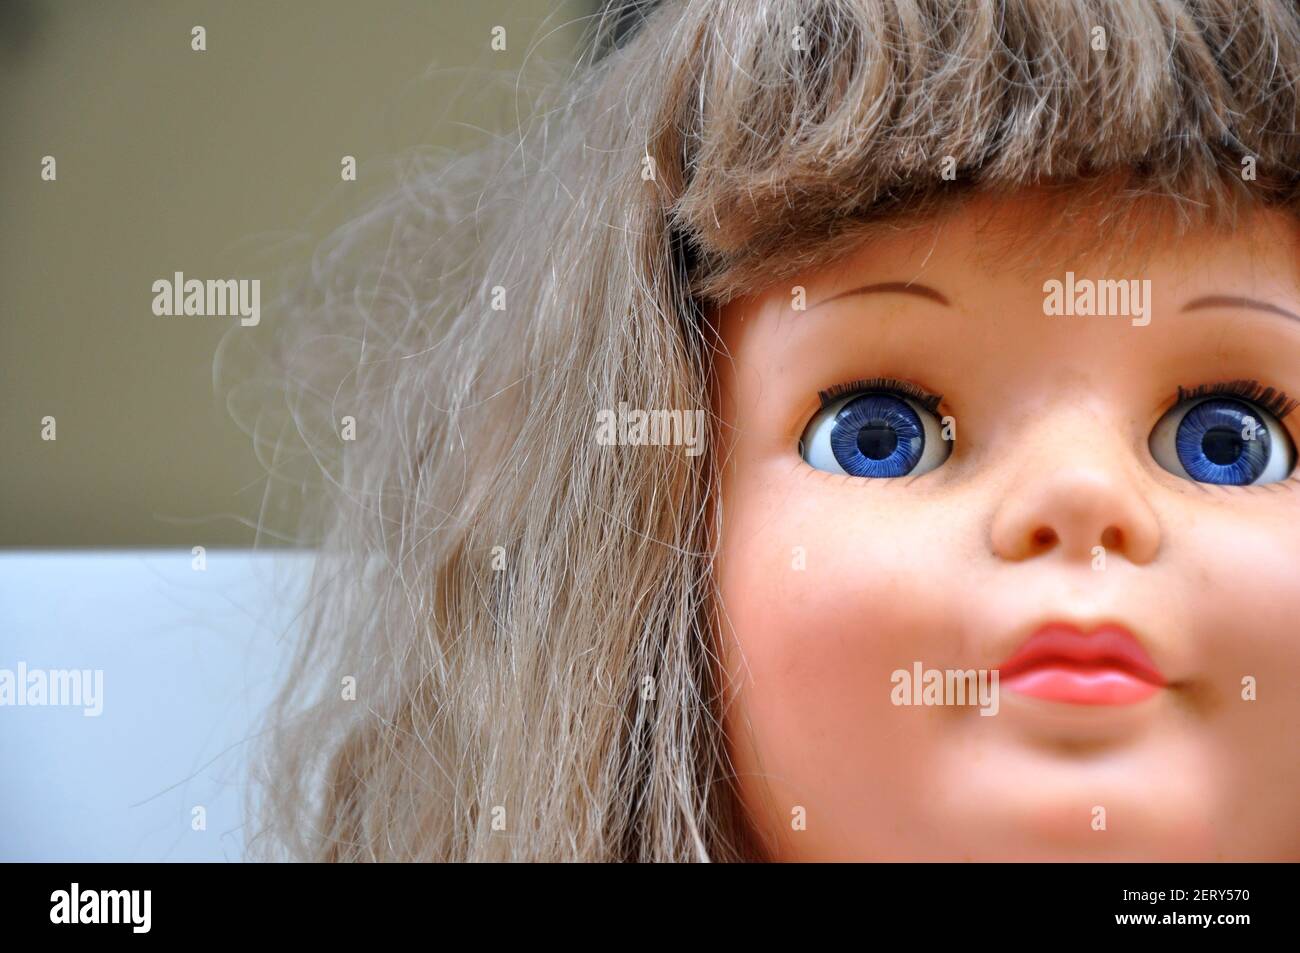 Puppe. Nahaufnahme von Puppengesicht, Puppengesicht im Zoom, in Pose, mit Details der Augen, Mund, Nase und Haare im Zoom mit selektivem Fokus auf die Augen Stockfoto